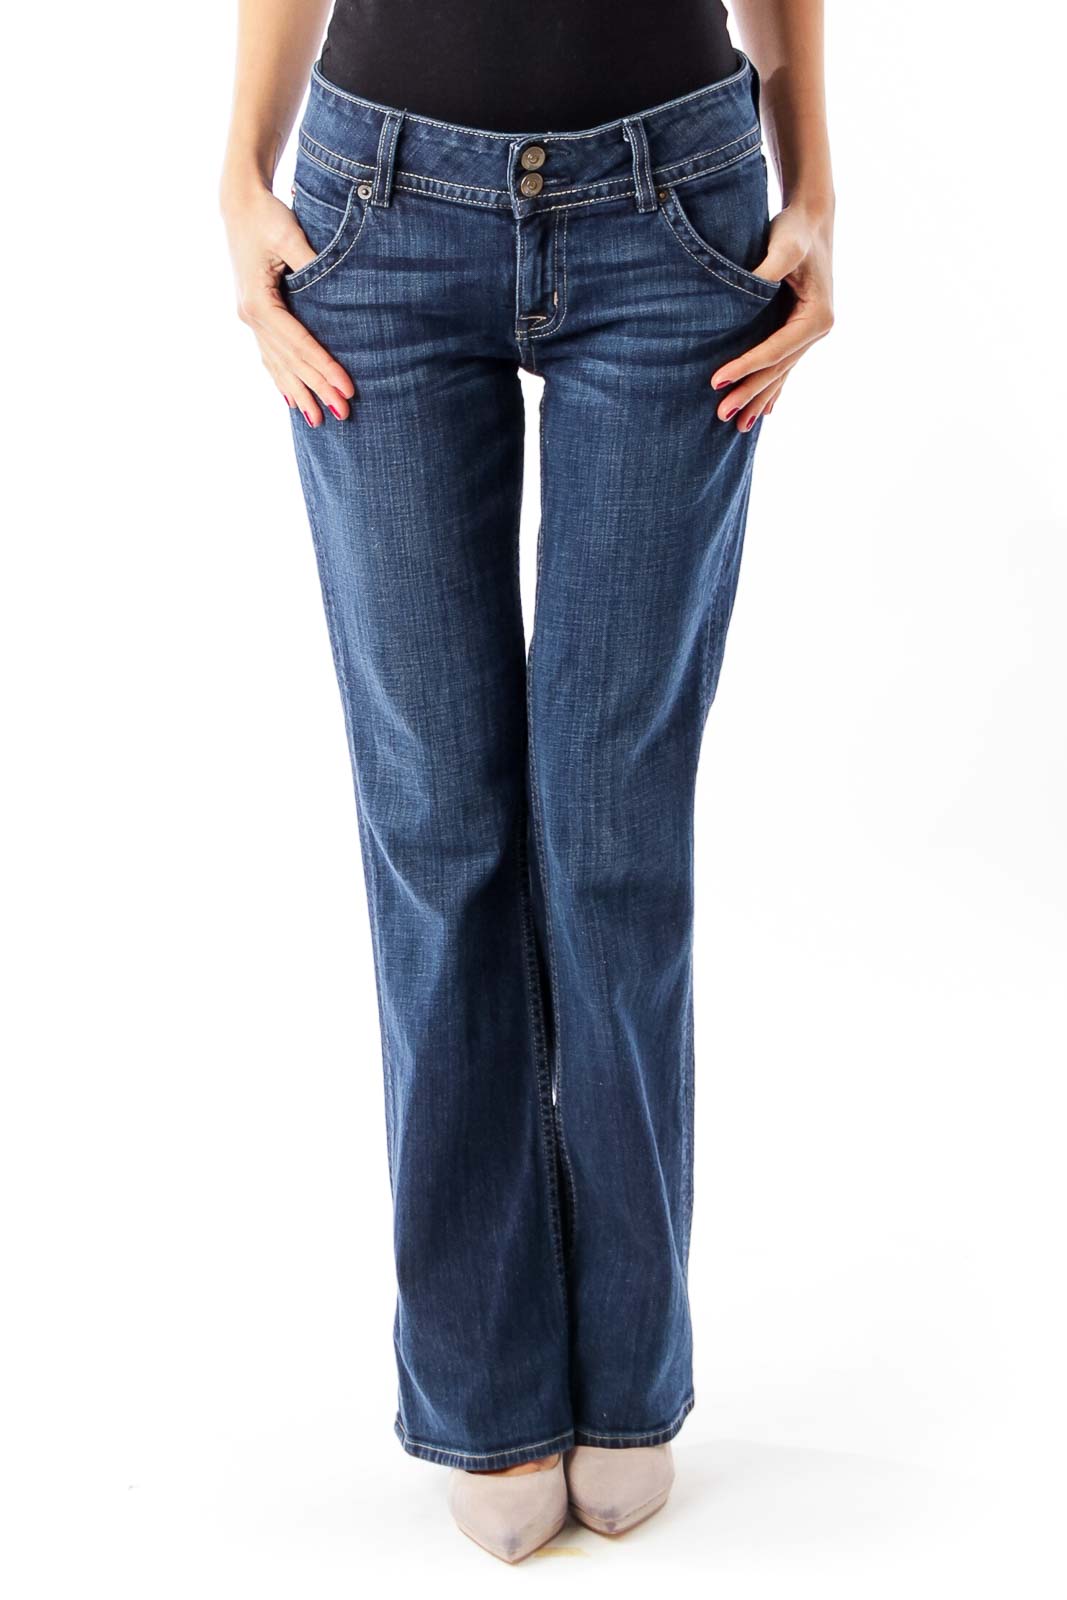 Blue Denim Jeans Front